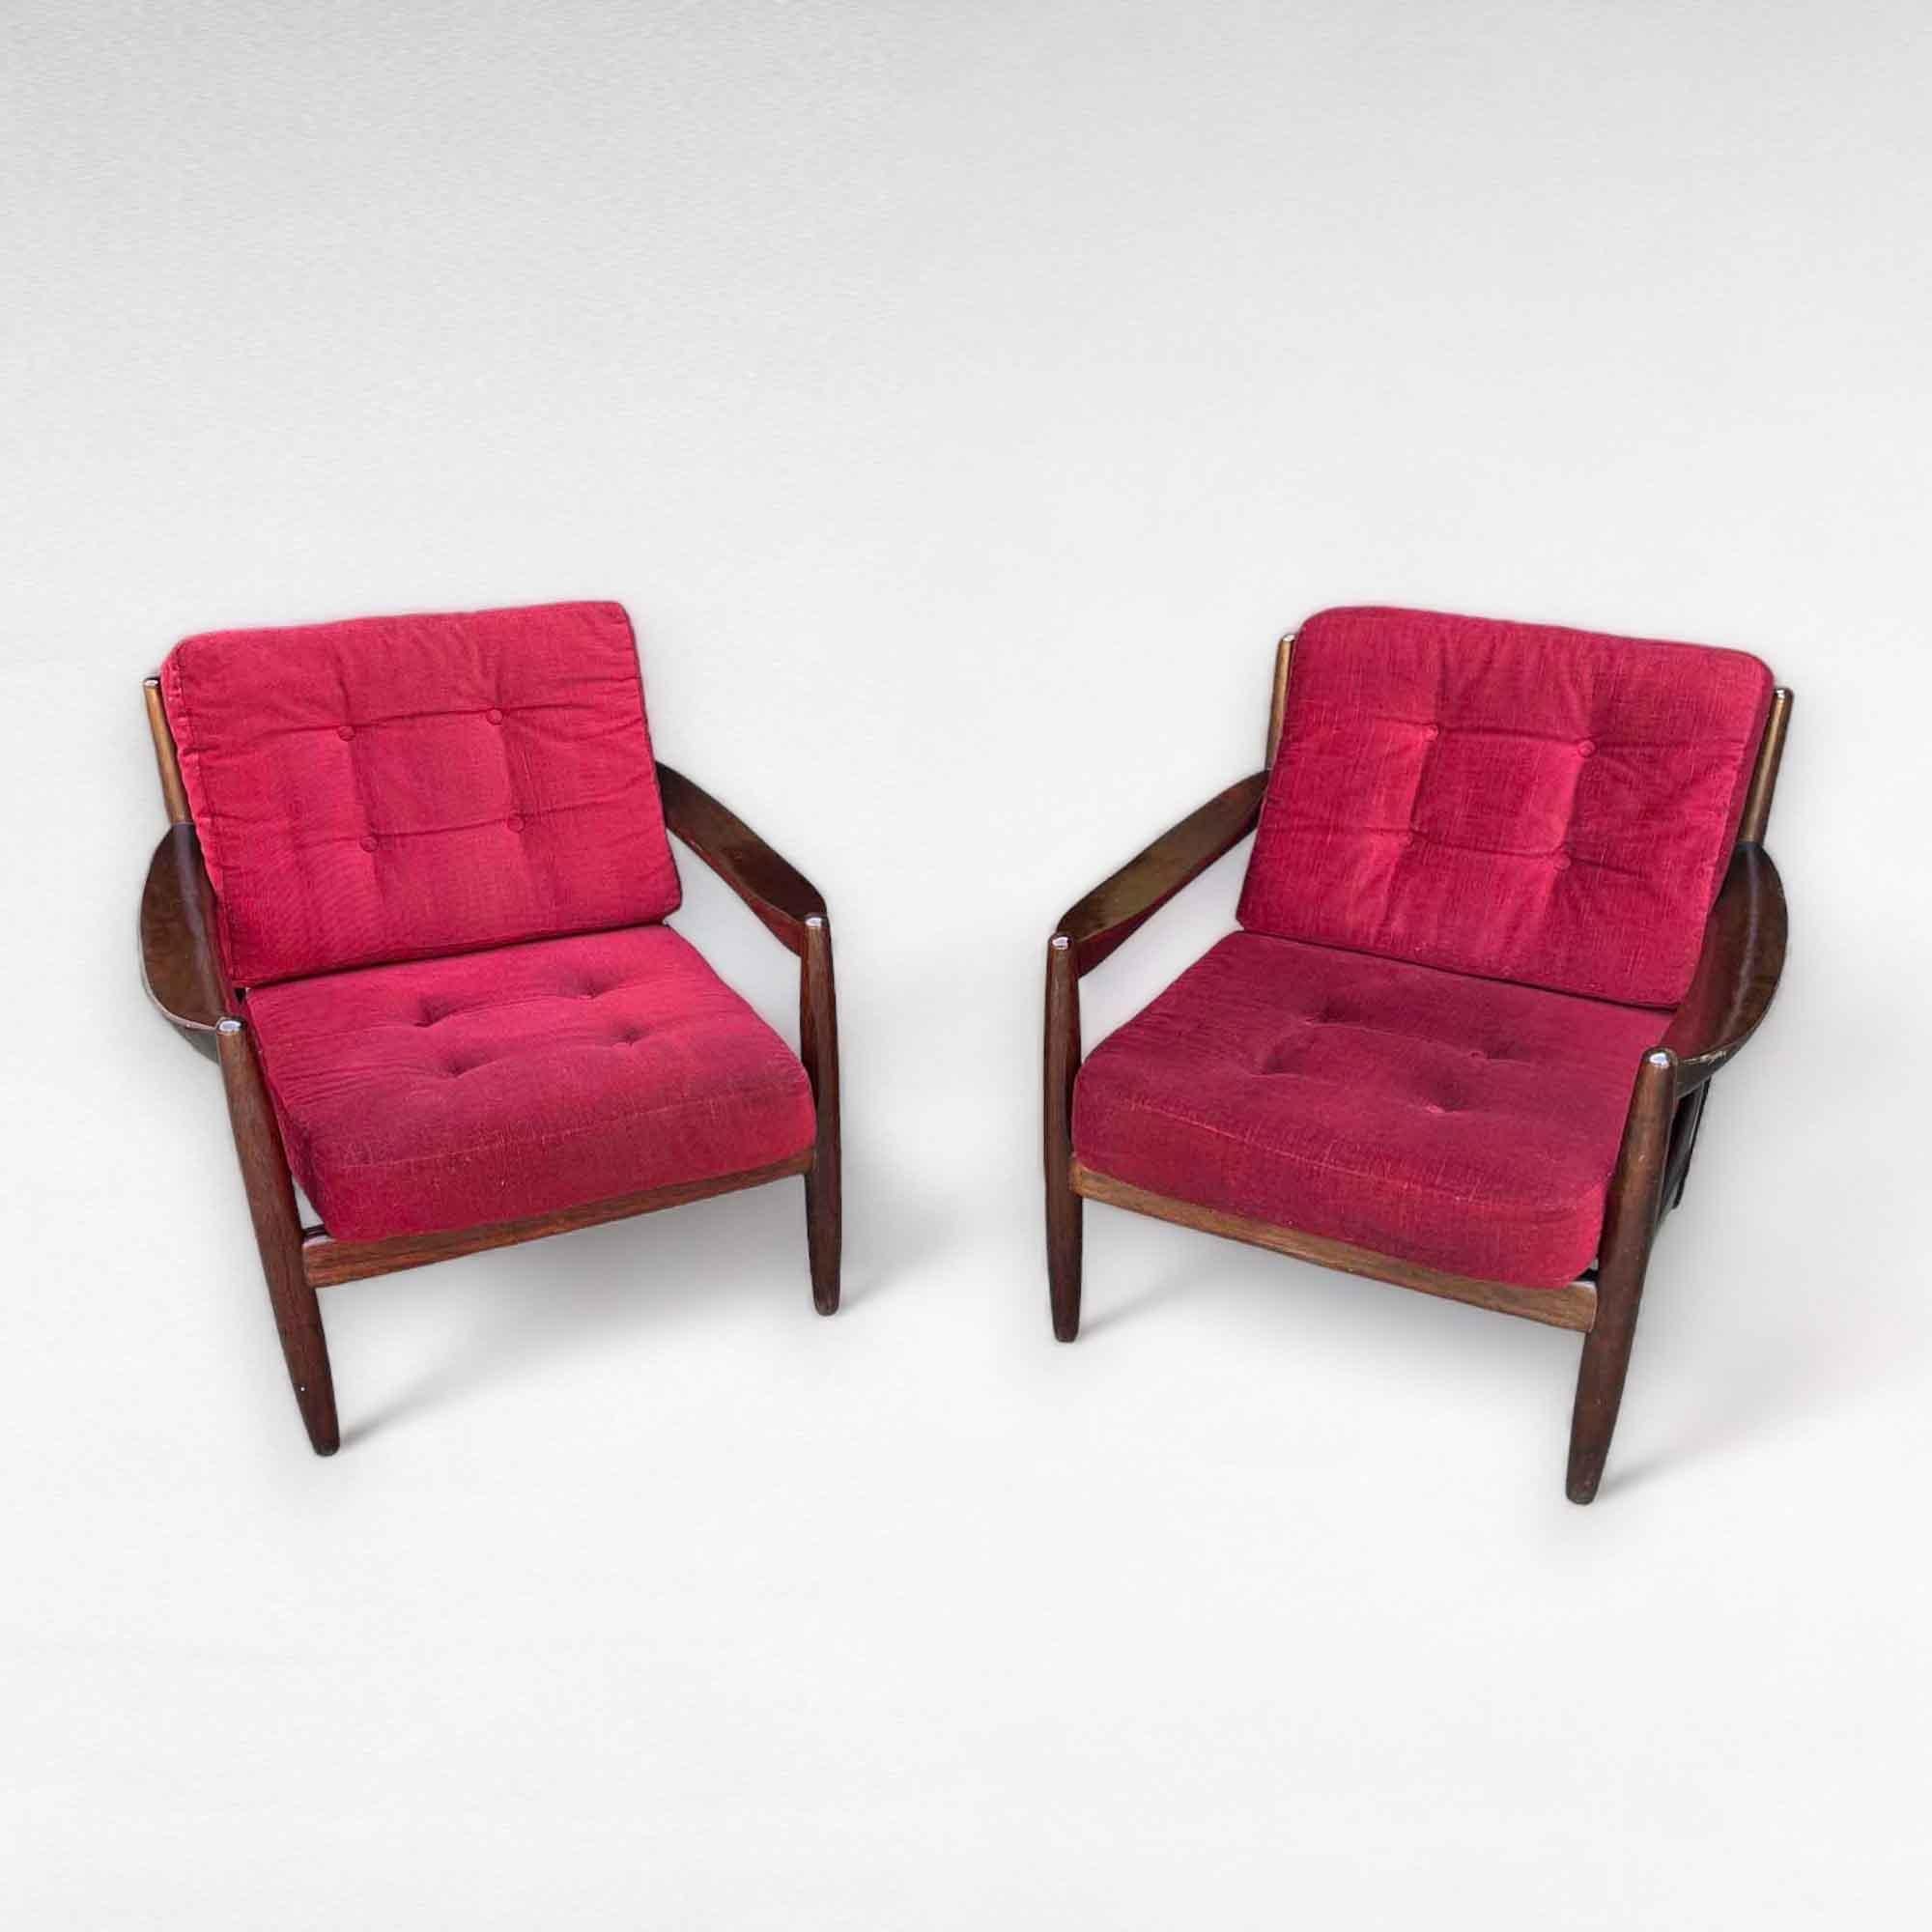 Mid-20th Century Sofa Set in Red Velvet by Grete Jalk, Denmark, 1960s For Sale